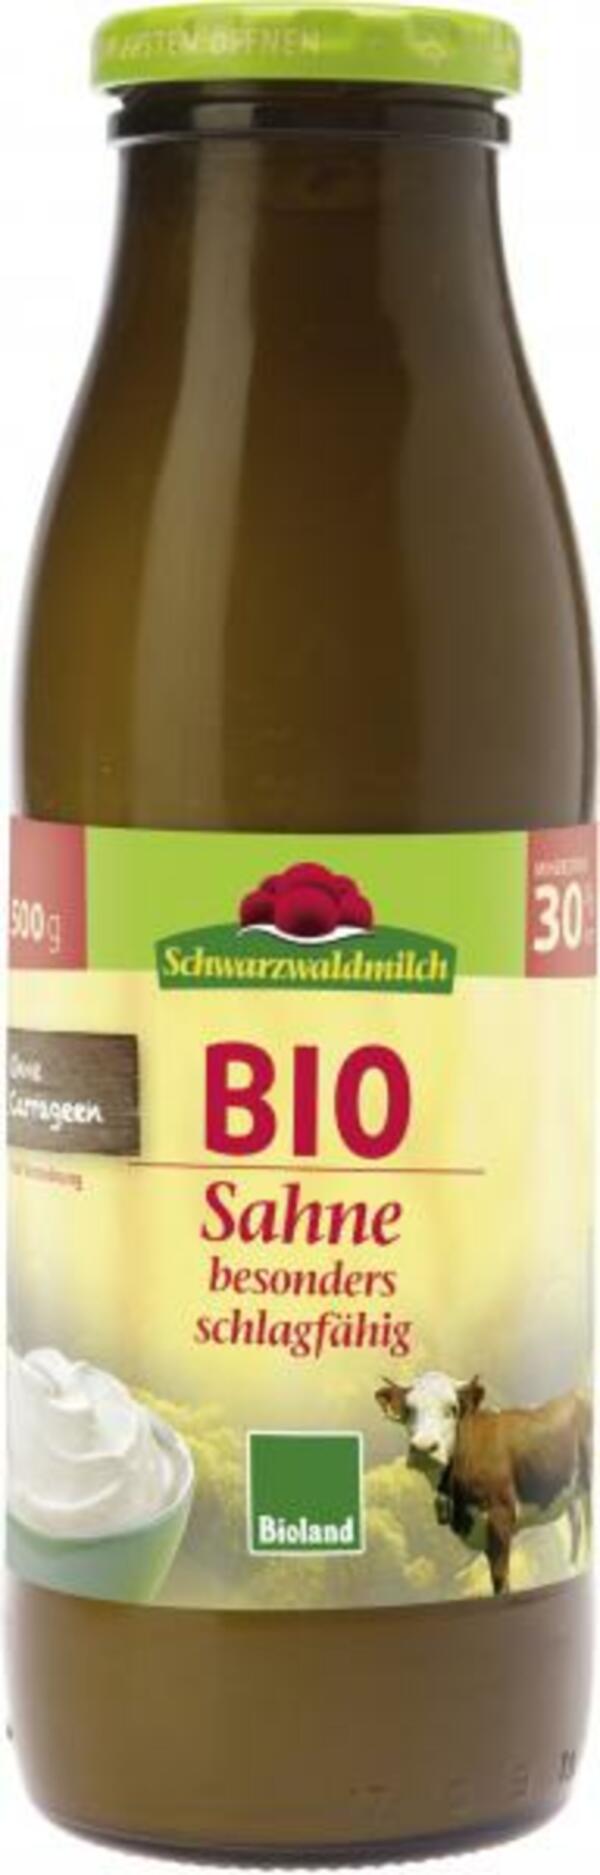 Bild 1 von Schwarzwaldmilch Bio Sahne 30%